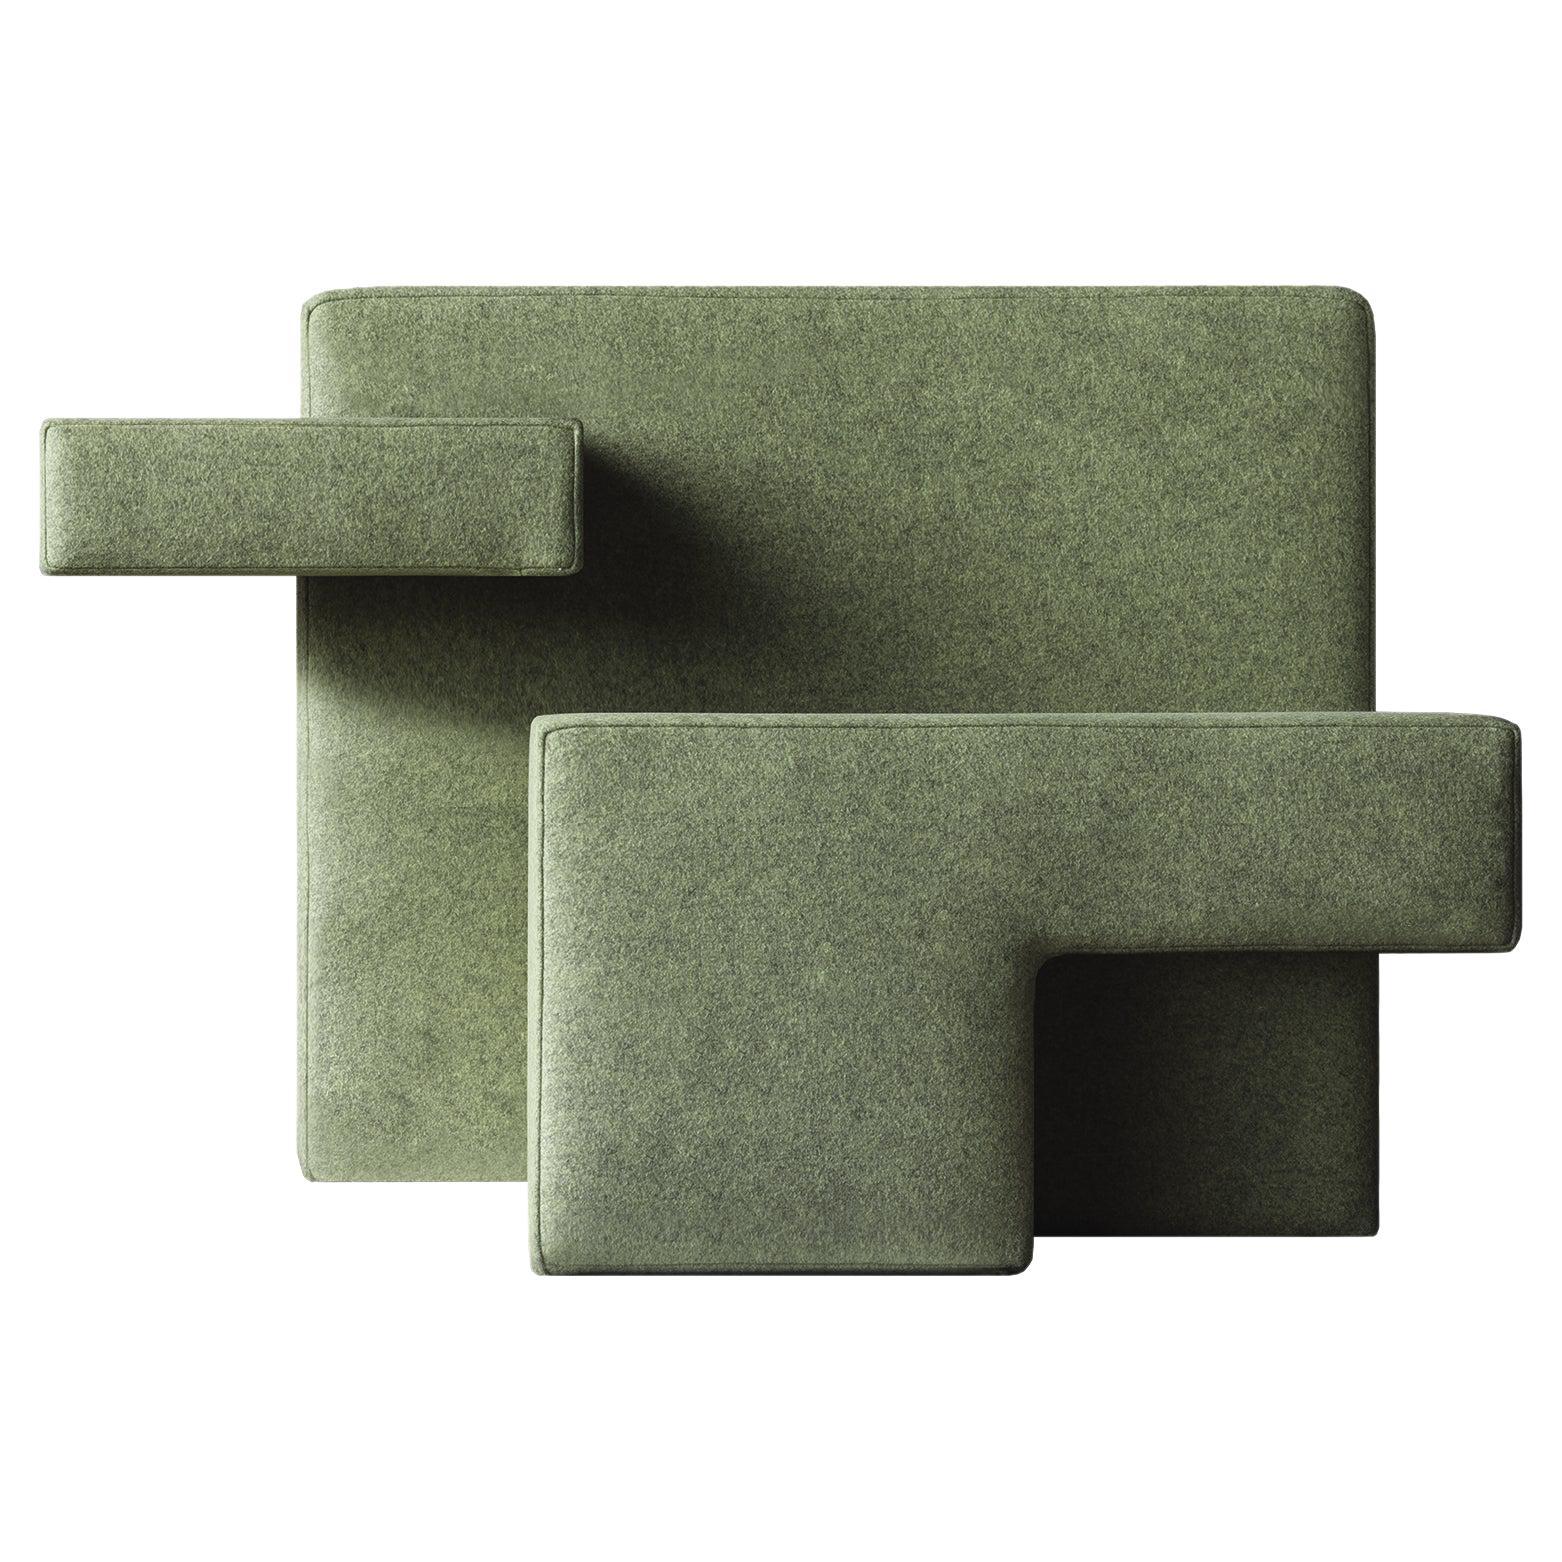 Fauteuil primitif vert, conçu par Studio Nucleo, fabriqué en Italie